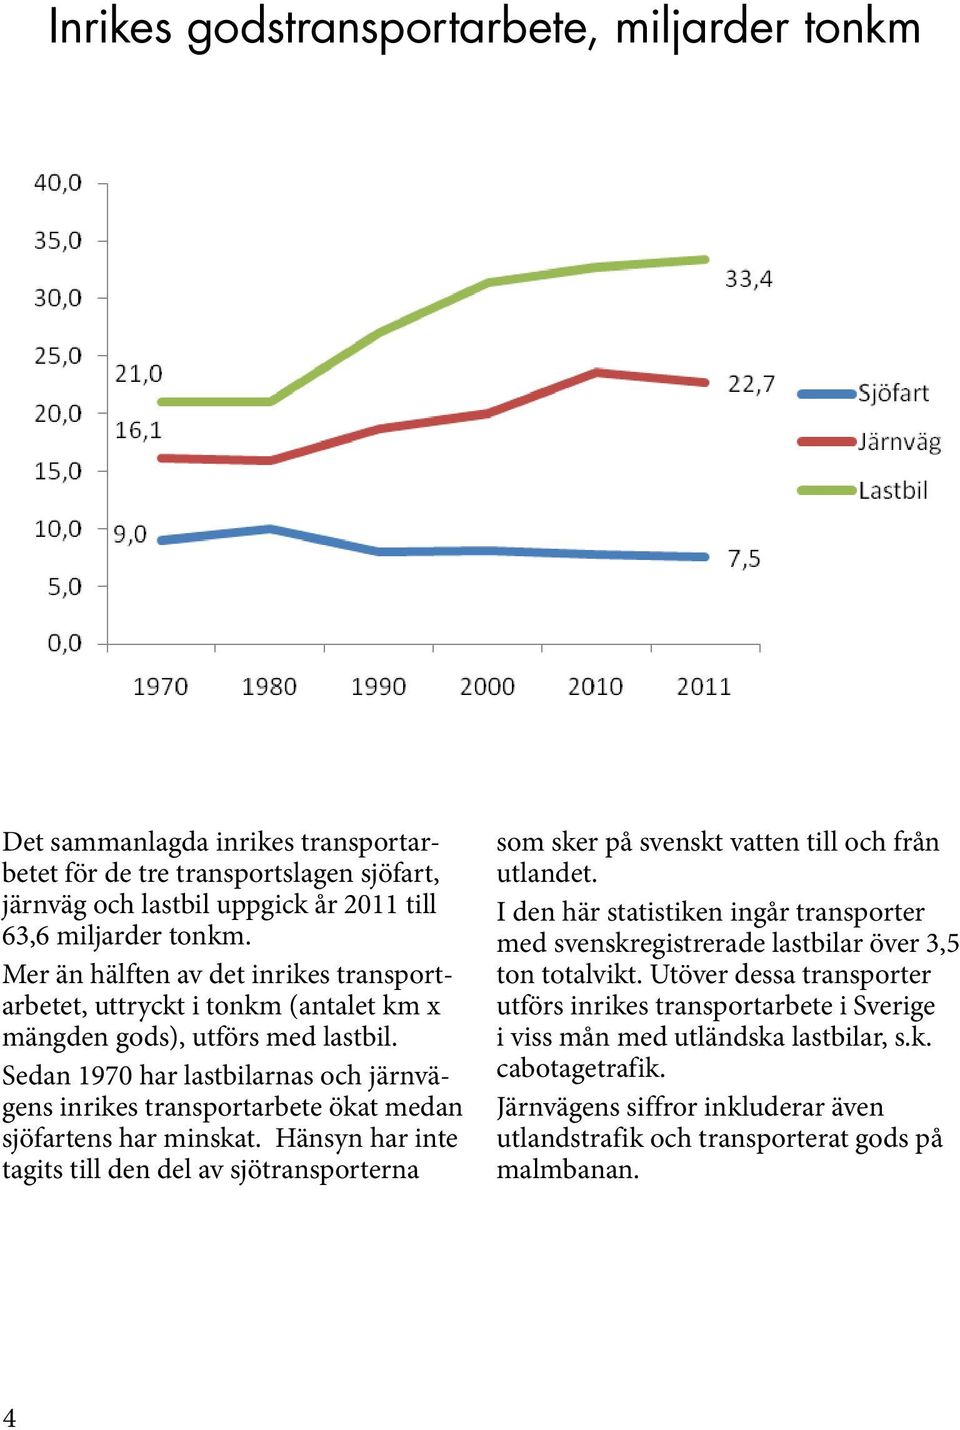 Sedan 1970 har lastbilarnas och järnvägens inrikes transportarbete ökat medan sjöfartens har minskat.